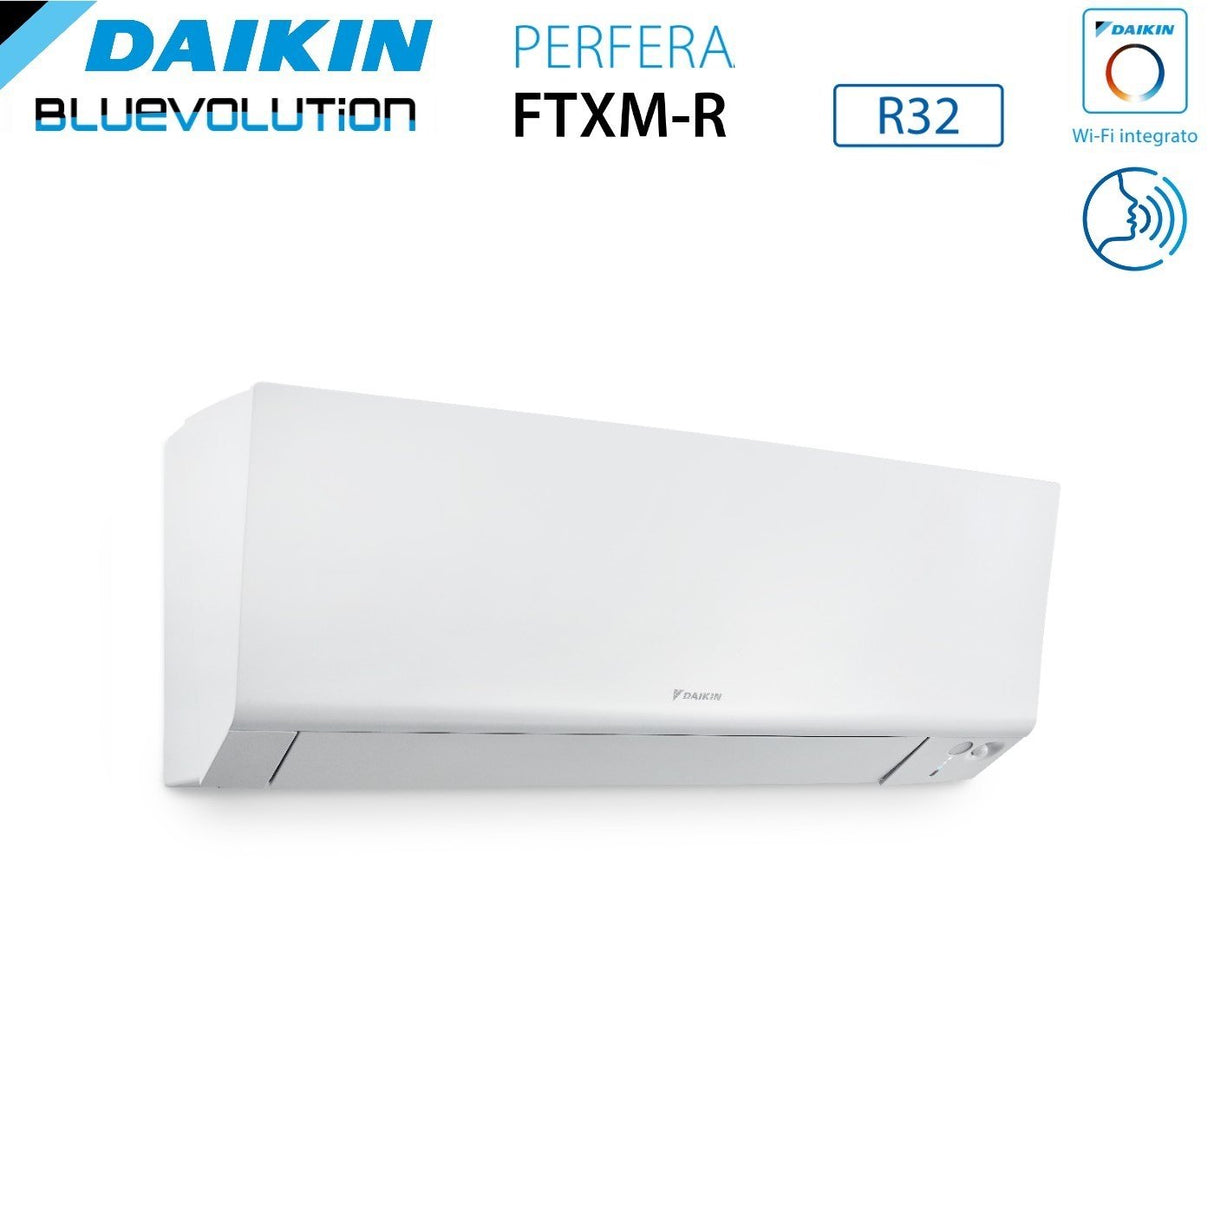 immagine-4-daikin-climatizzatore-condizionatore-daikin-bluevolution-quadri-split-inverter-serie-ftxmr-perfera-wall-79915-con-4mxm80a-r-32-wi-fi-integrato-70009000900015000-garanzia-italiana